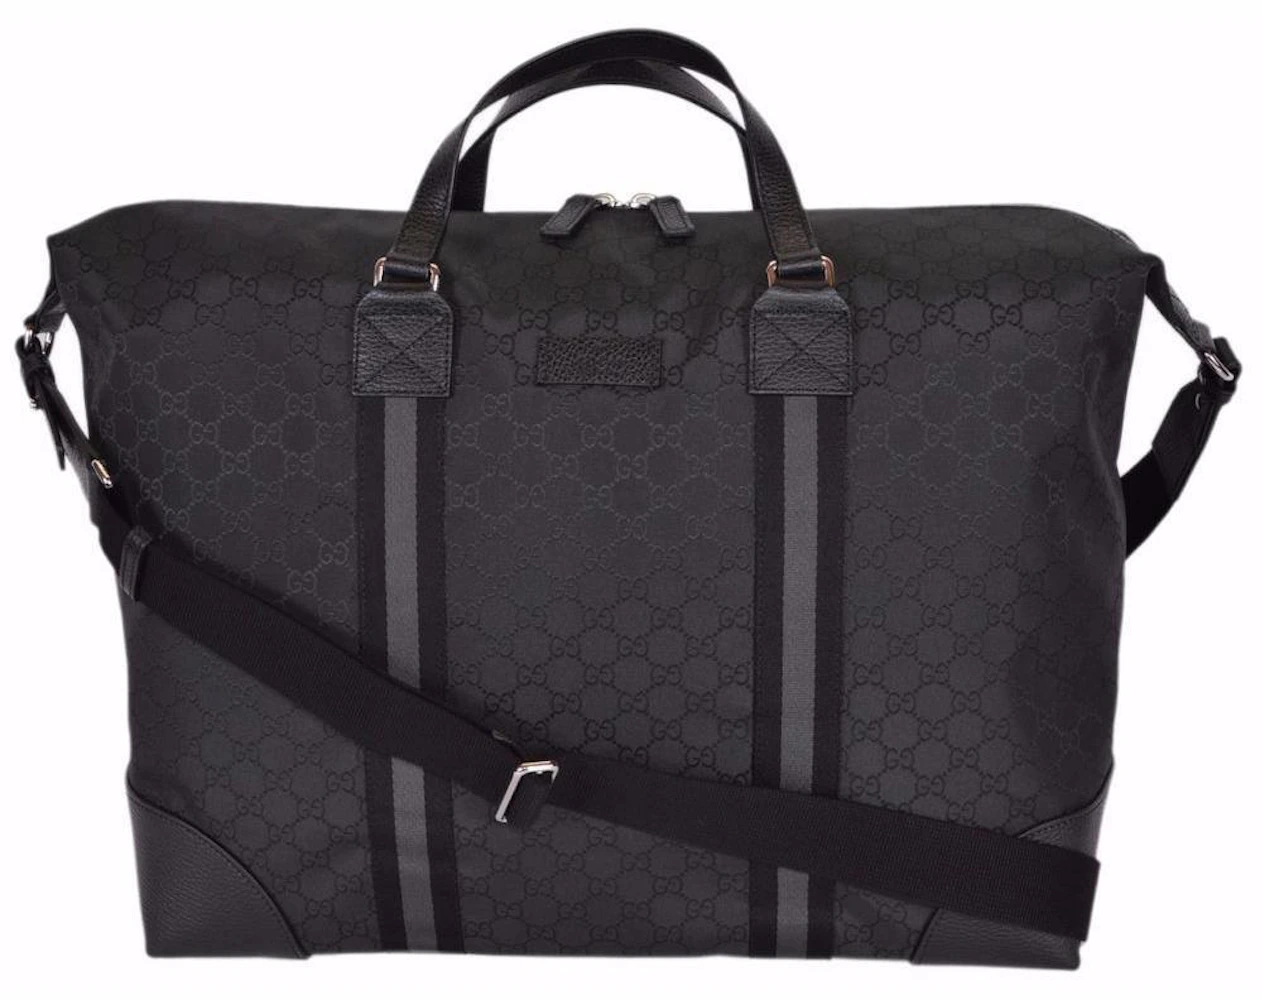 Gucci Travel Bag Duffle Monogram GG Horizontal Vintage Web - US